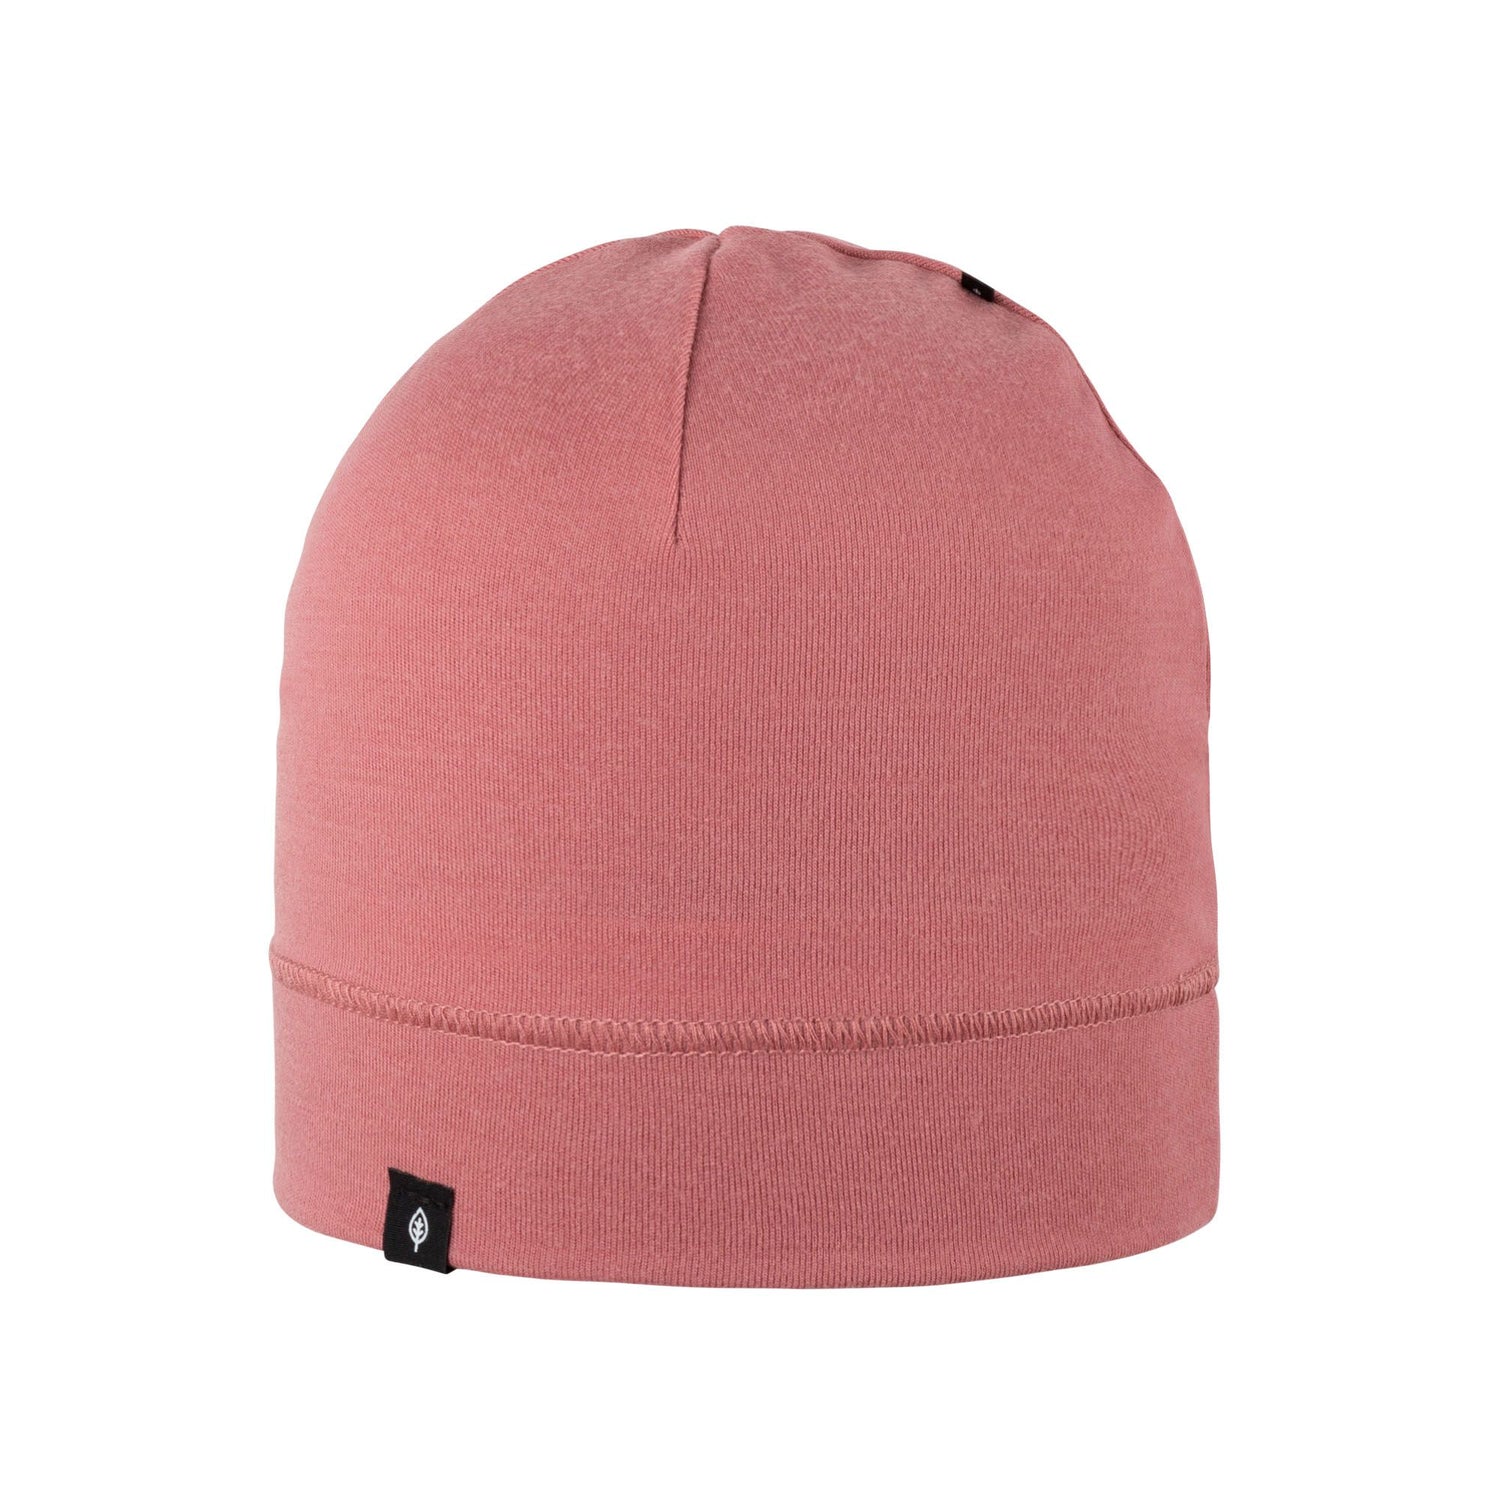 Weiche Beanie Mütze aus Bio-Merinowolle, rosa von Pure Pure für Mädchen und Jungen . Die Mütze hat eine super Passform!